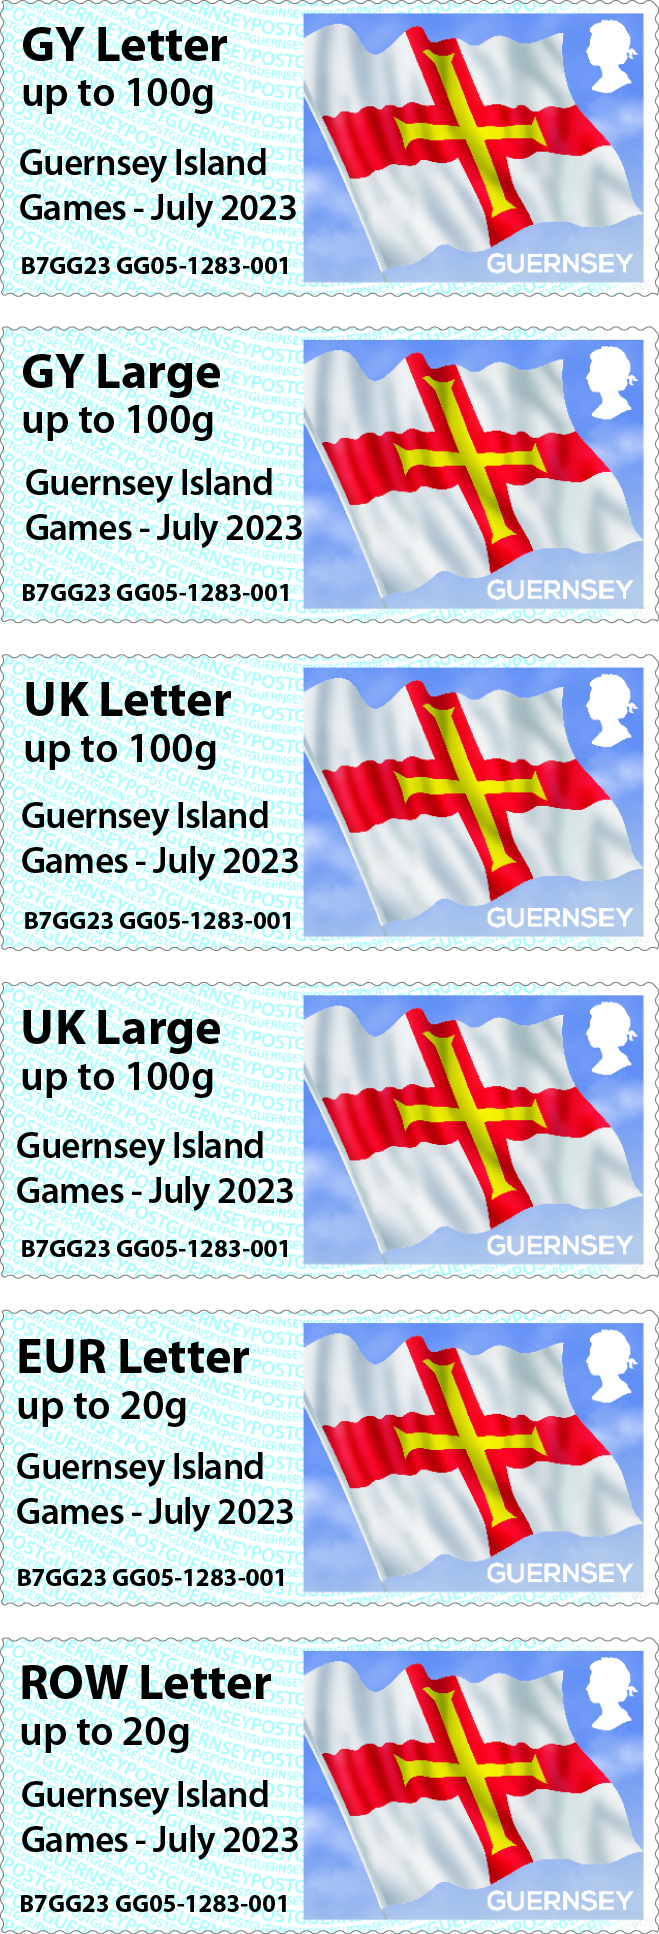 Guernsey Island Games - July 2023 overprint (Market St)